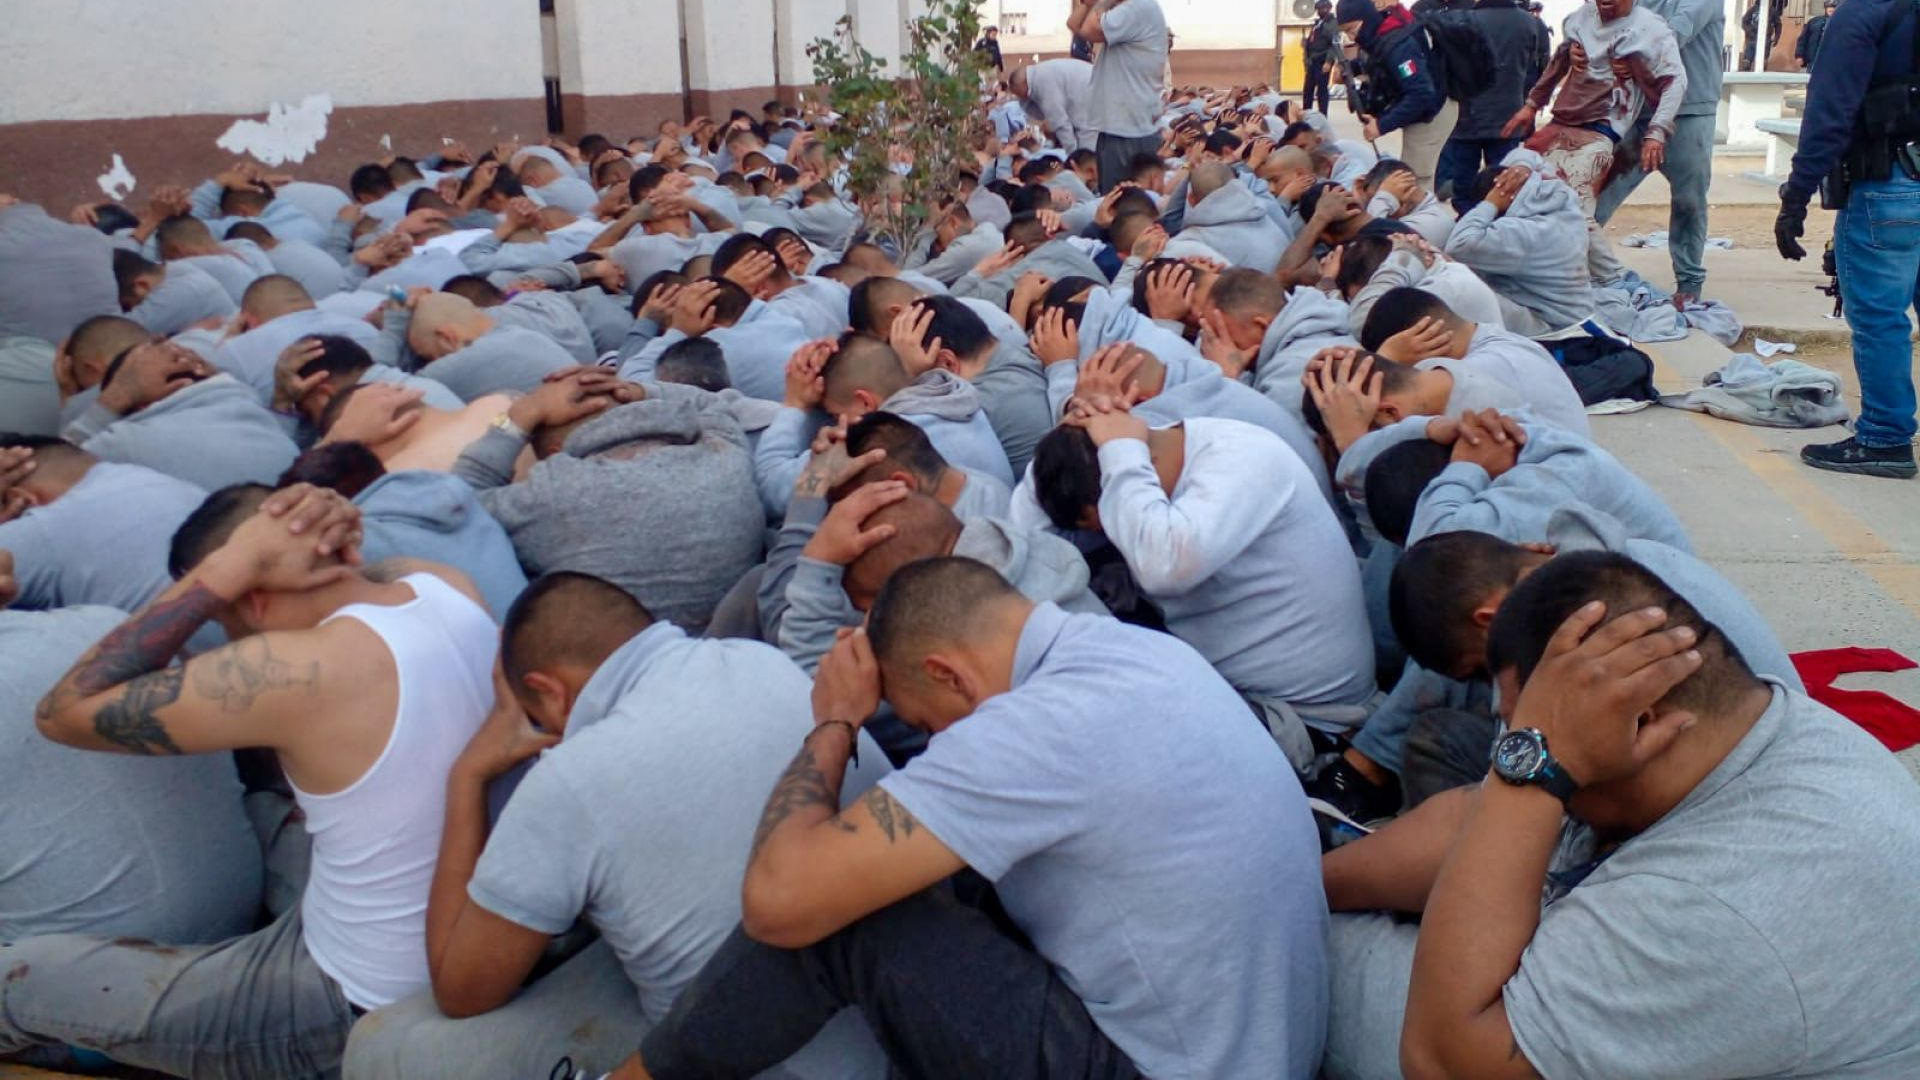 El motín en el Cereso reveló la corrupción que se vive en las prisiones de Chihuahua (Foto: Cuartoscuro)